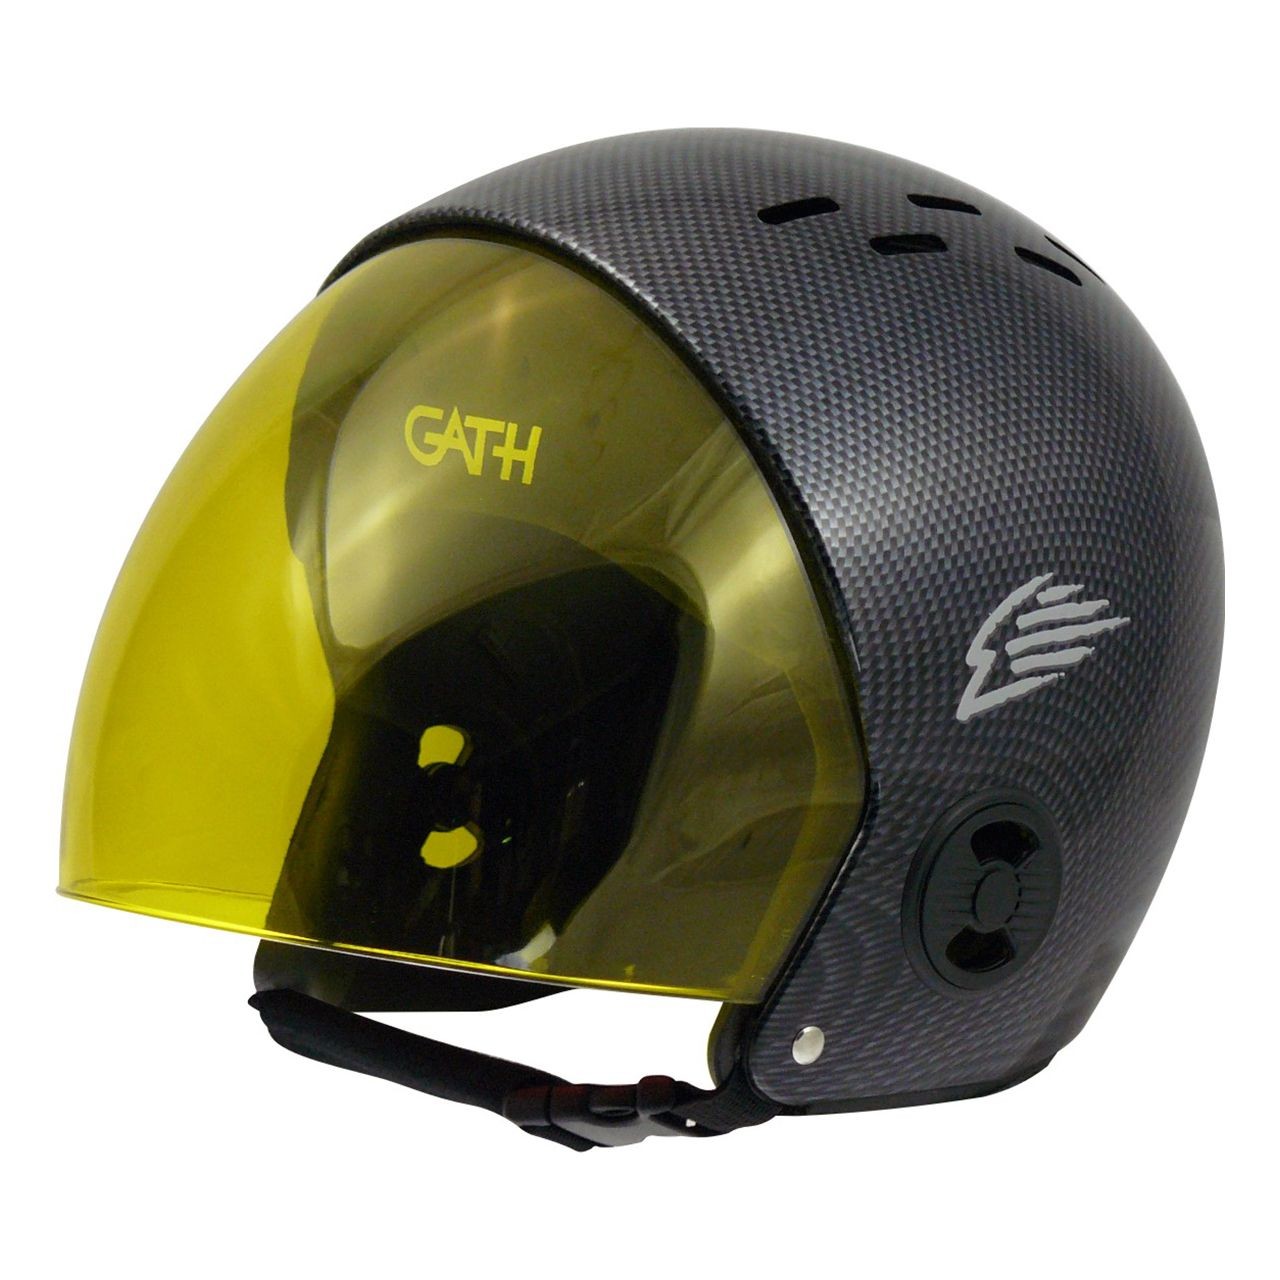 GATH - Visière - Full Face Visor pour casques GATH RV Retractables